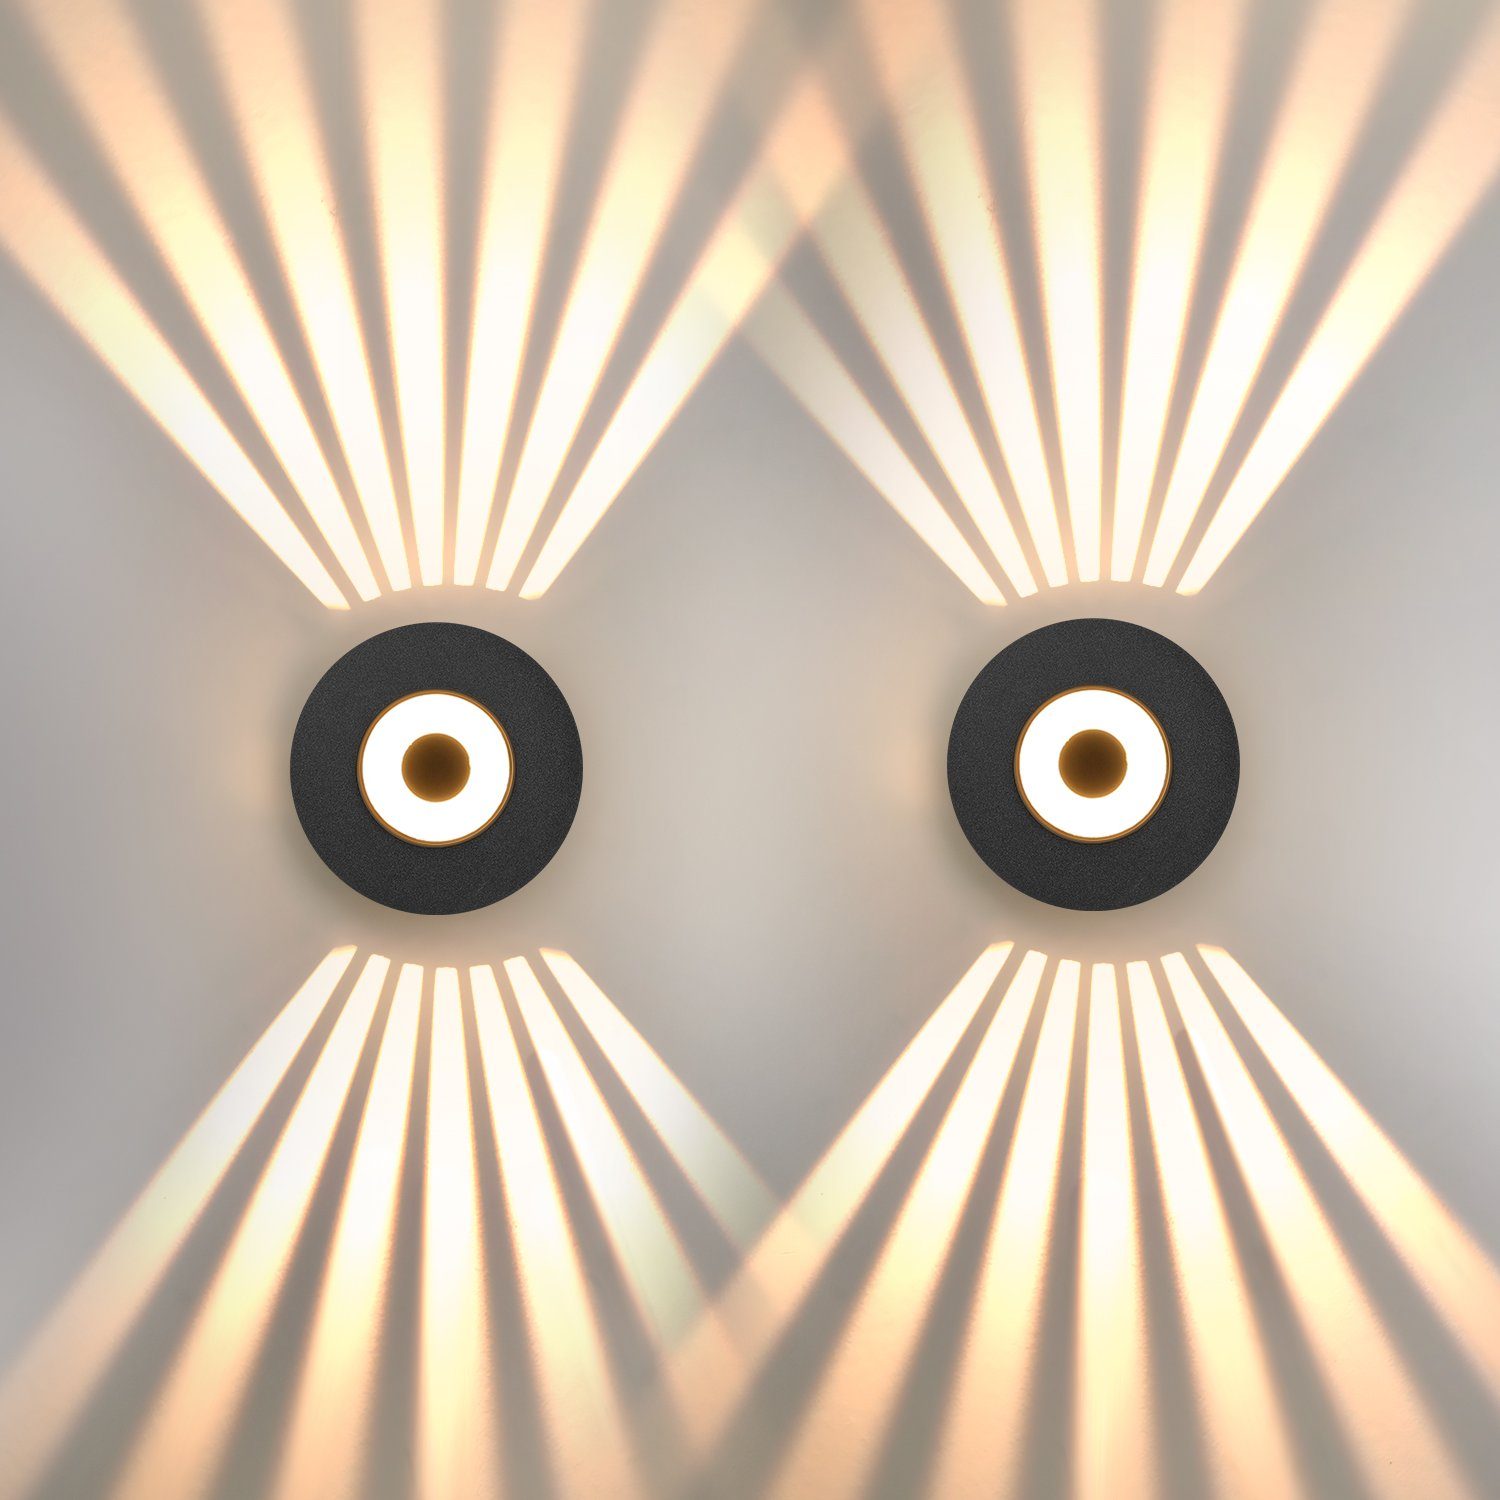 iscooter Wandleuchte 6W LED Wandlampe Innen/Außen, Wandlampe mit Einstellbar Abstrahlwinkel, Warmweiß, IP65 Wasserdicht Wandbeleuchtung, für Gärten, Terrassen, Garagen 2 Stück